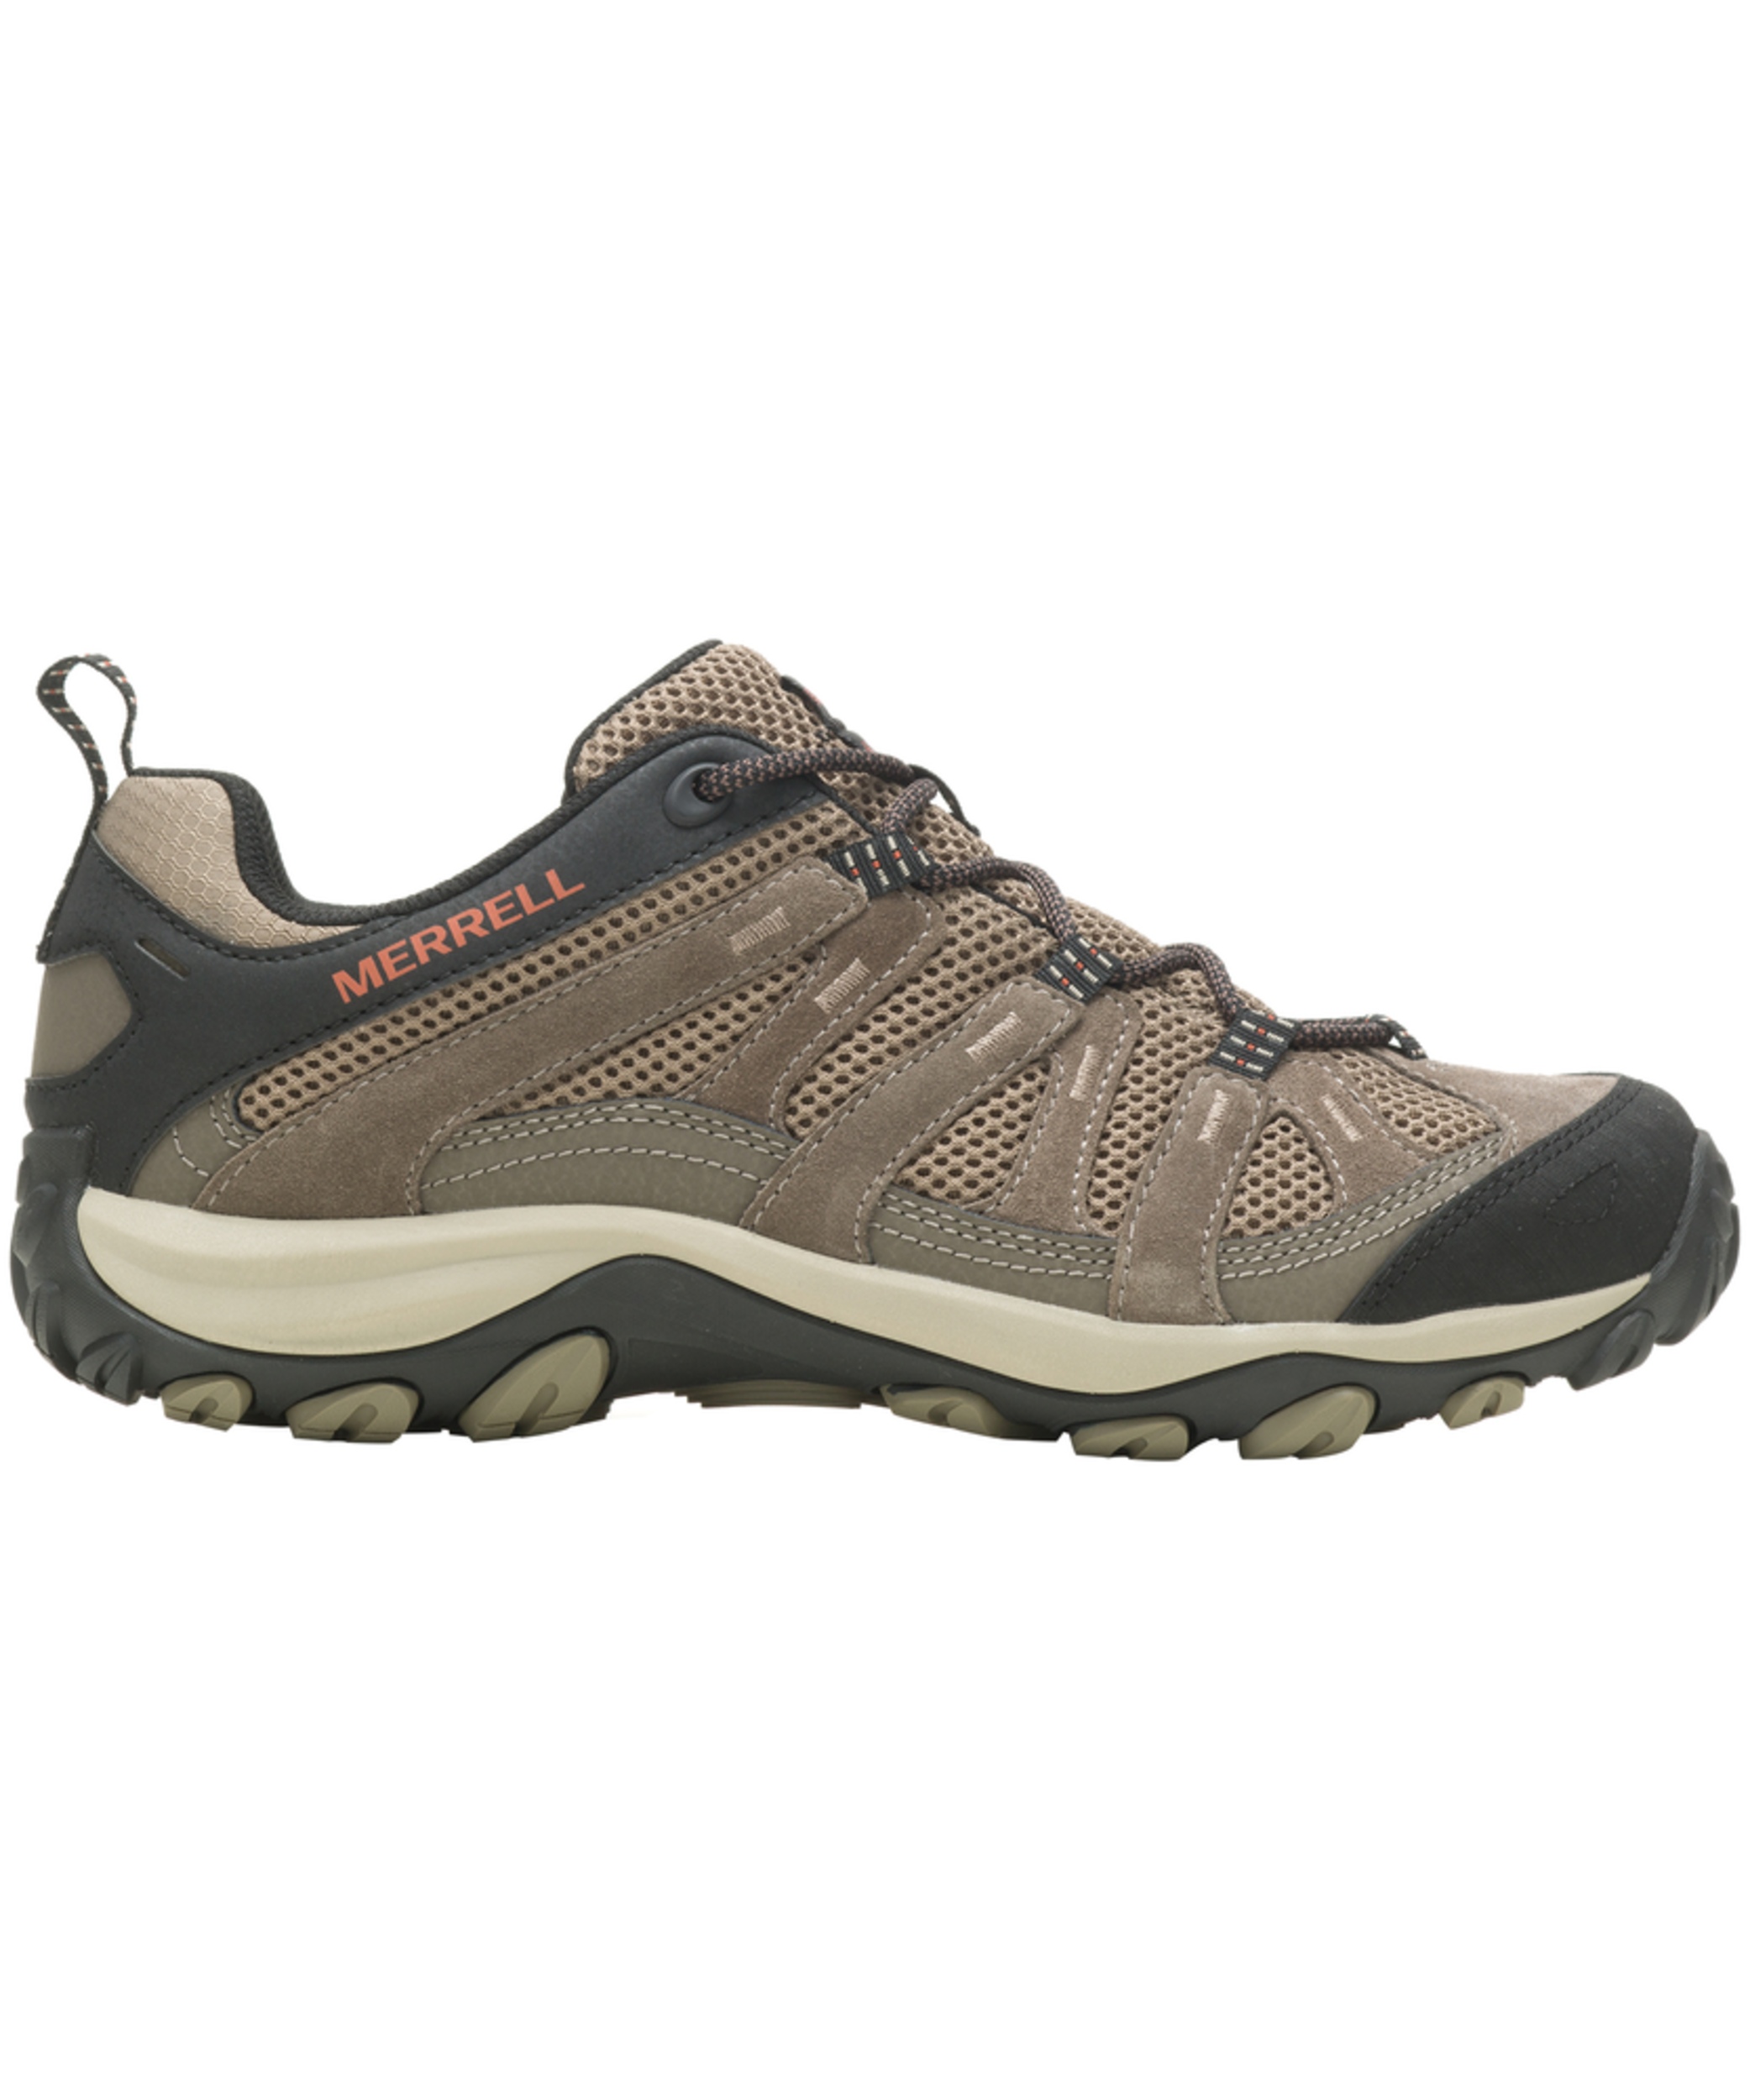 Merrell Men's Alverstone 2 Hiking Shoes - Boulder/Brindle | Marks